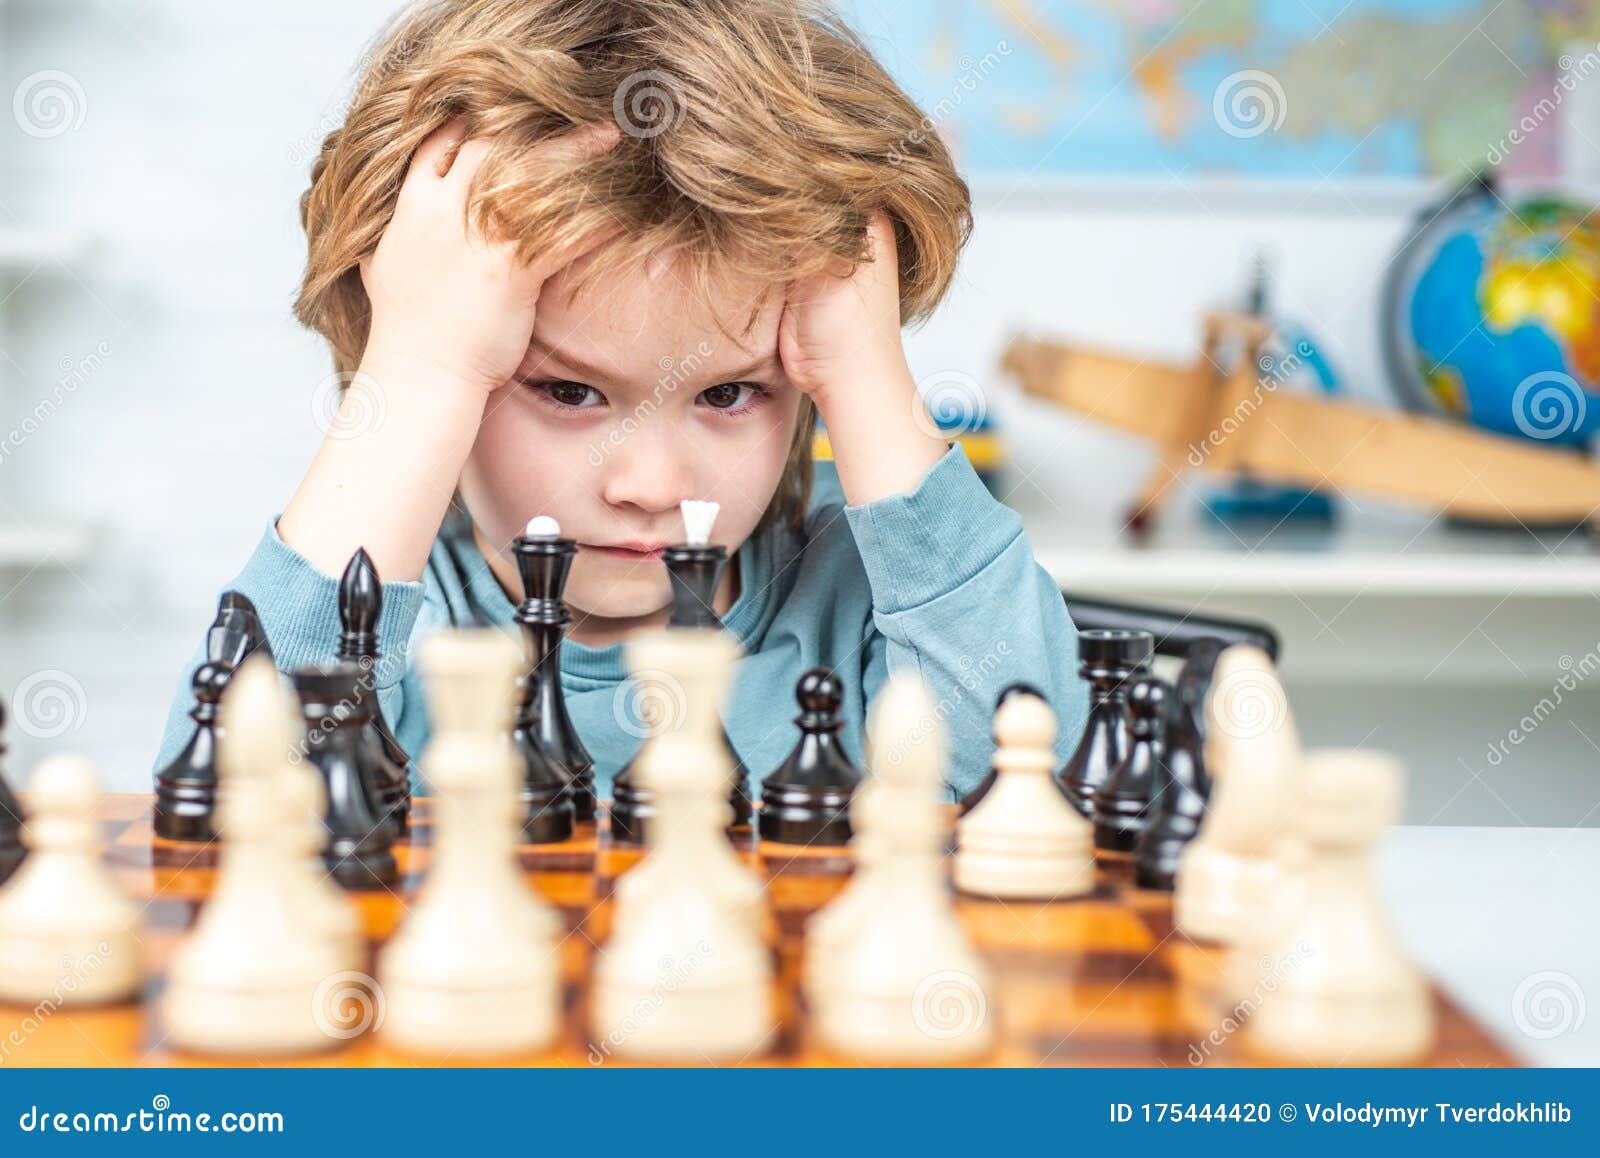 conceito de educação de xadrez online. menino sentado à mesa com